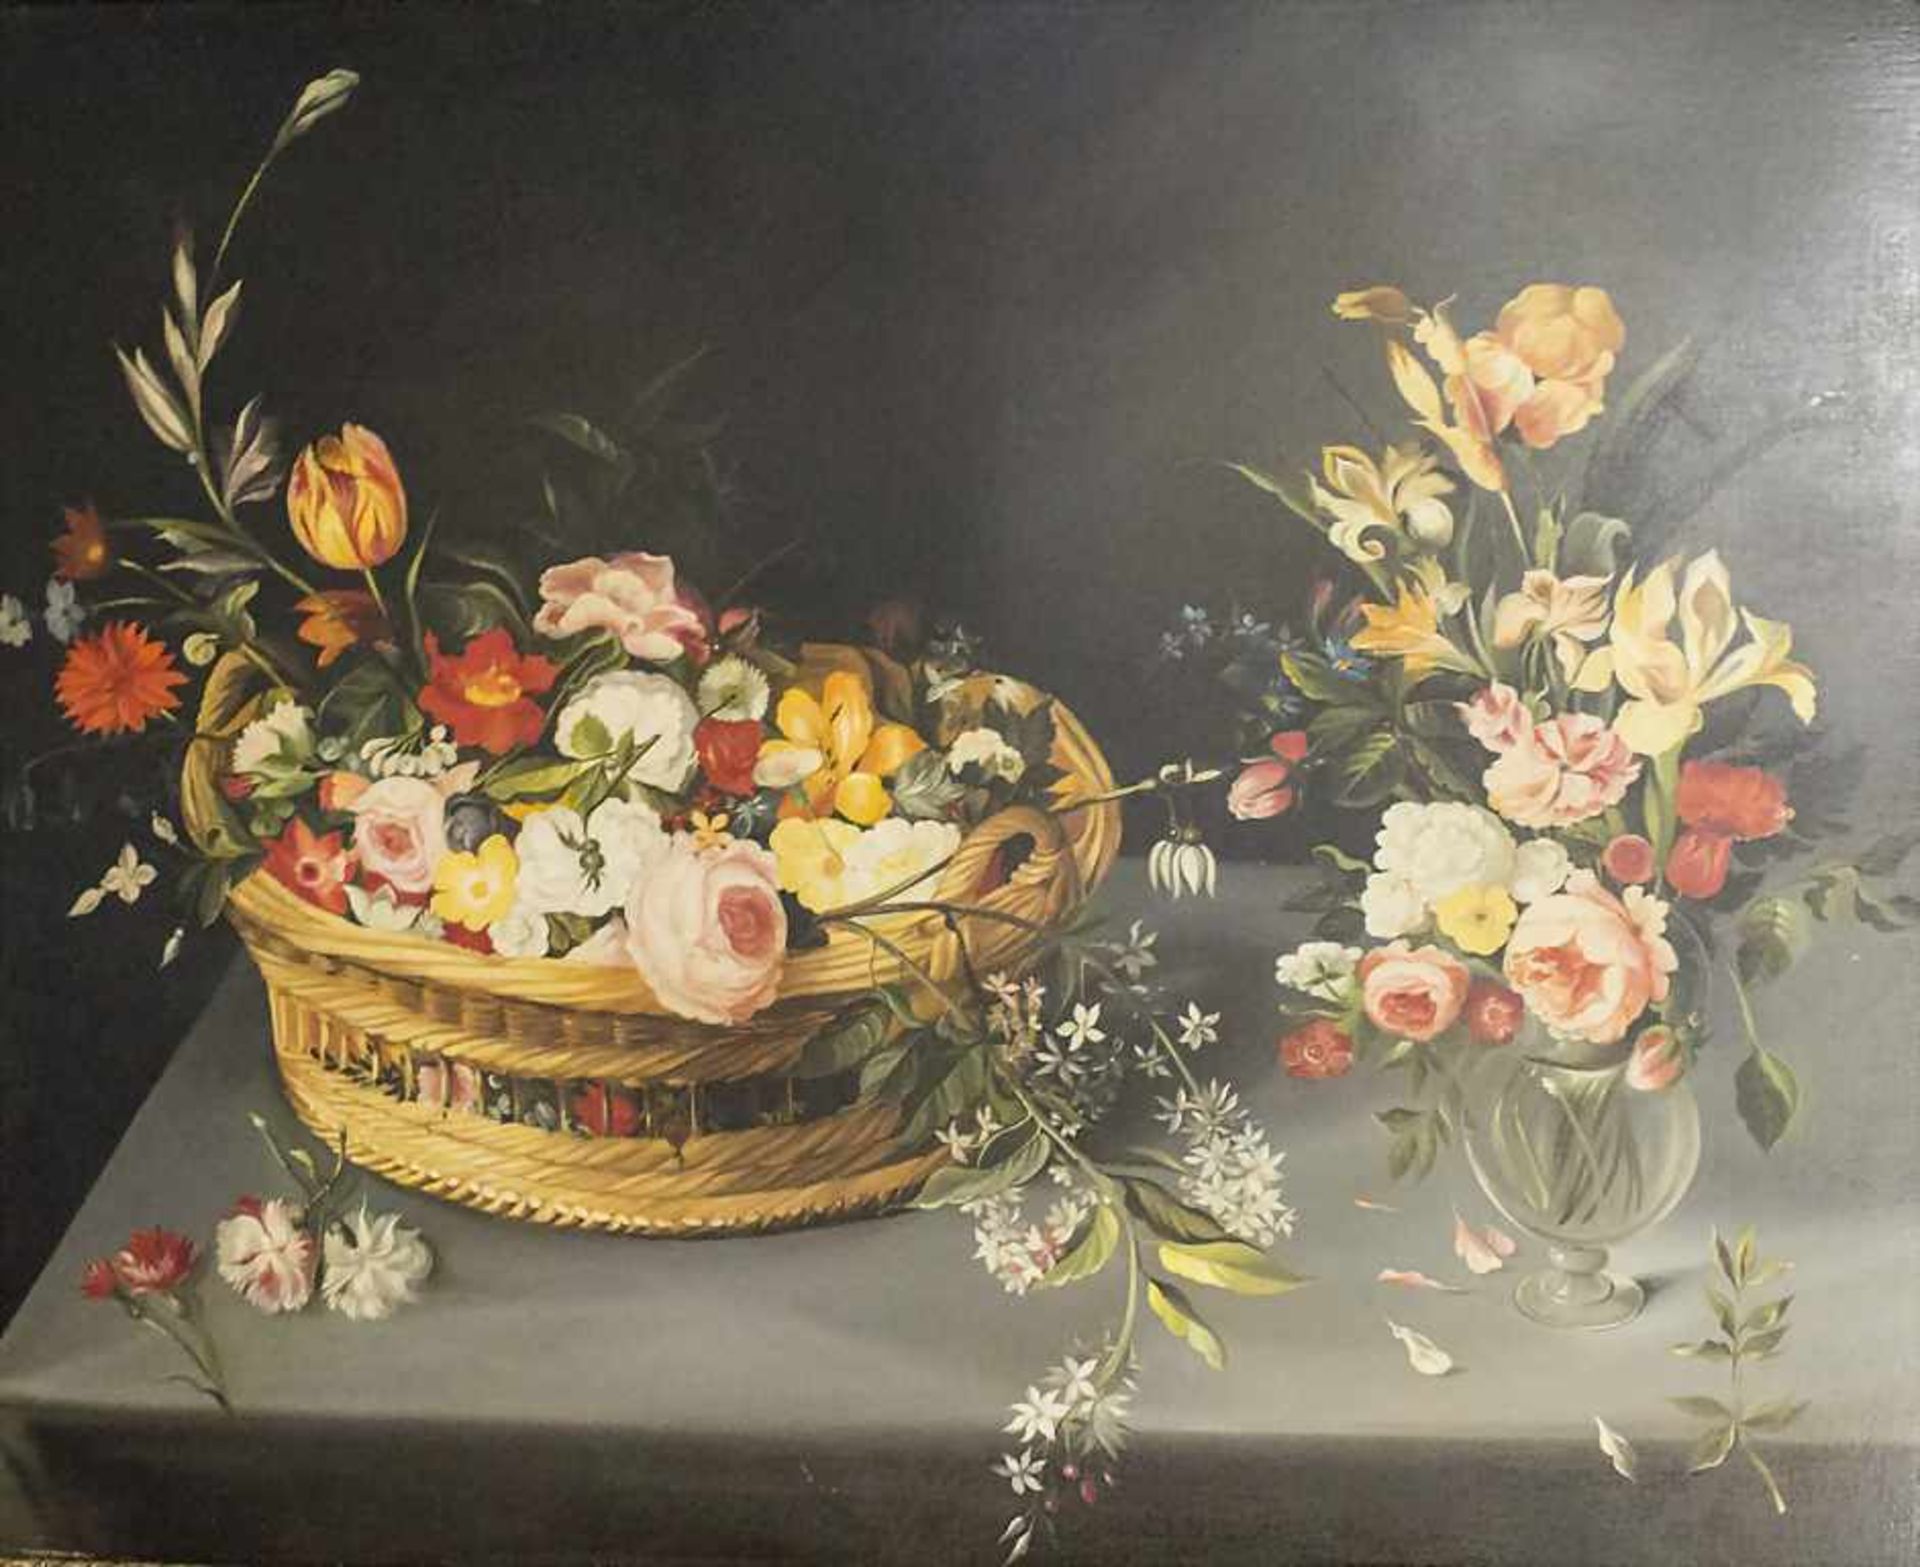 Künstler des 19. Jh., 'Stillleben mit Blumenkorb und Blumenvase' / 'A still life with flower ba